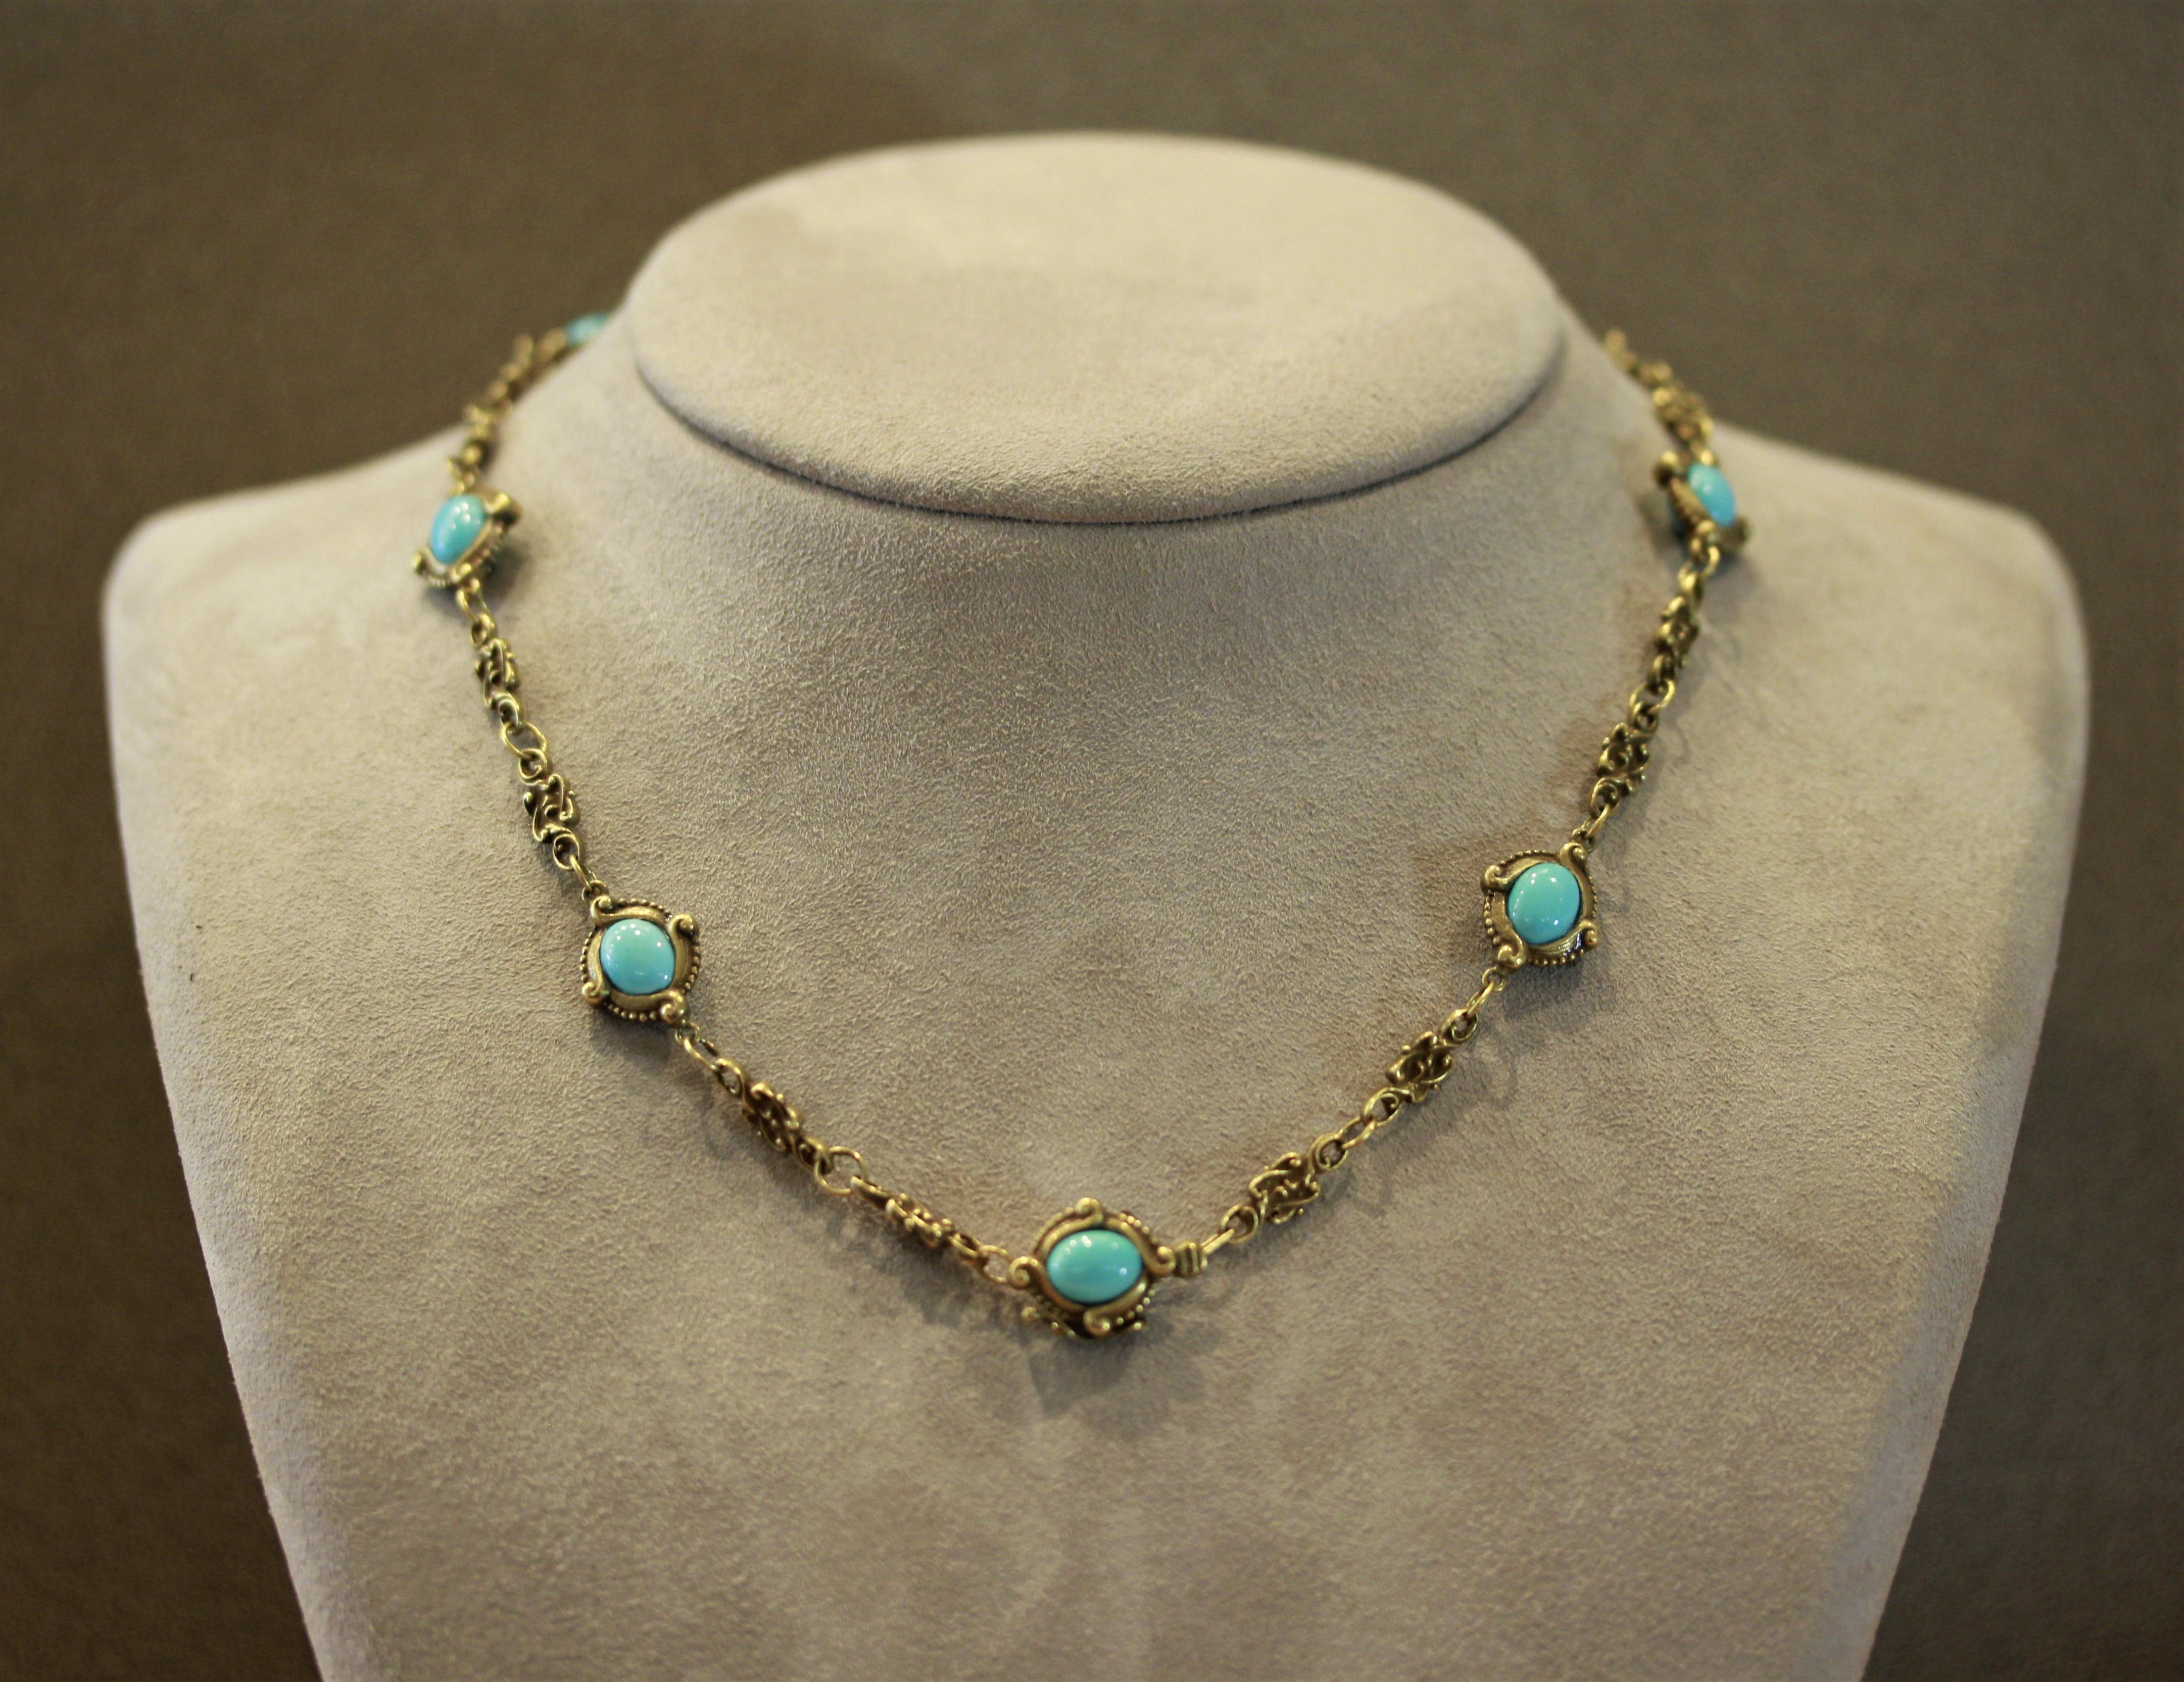 Women's Art Nouveau Antique Turquoise Gold Filigree Necklace